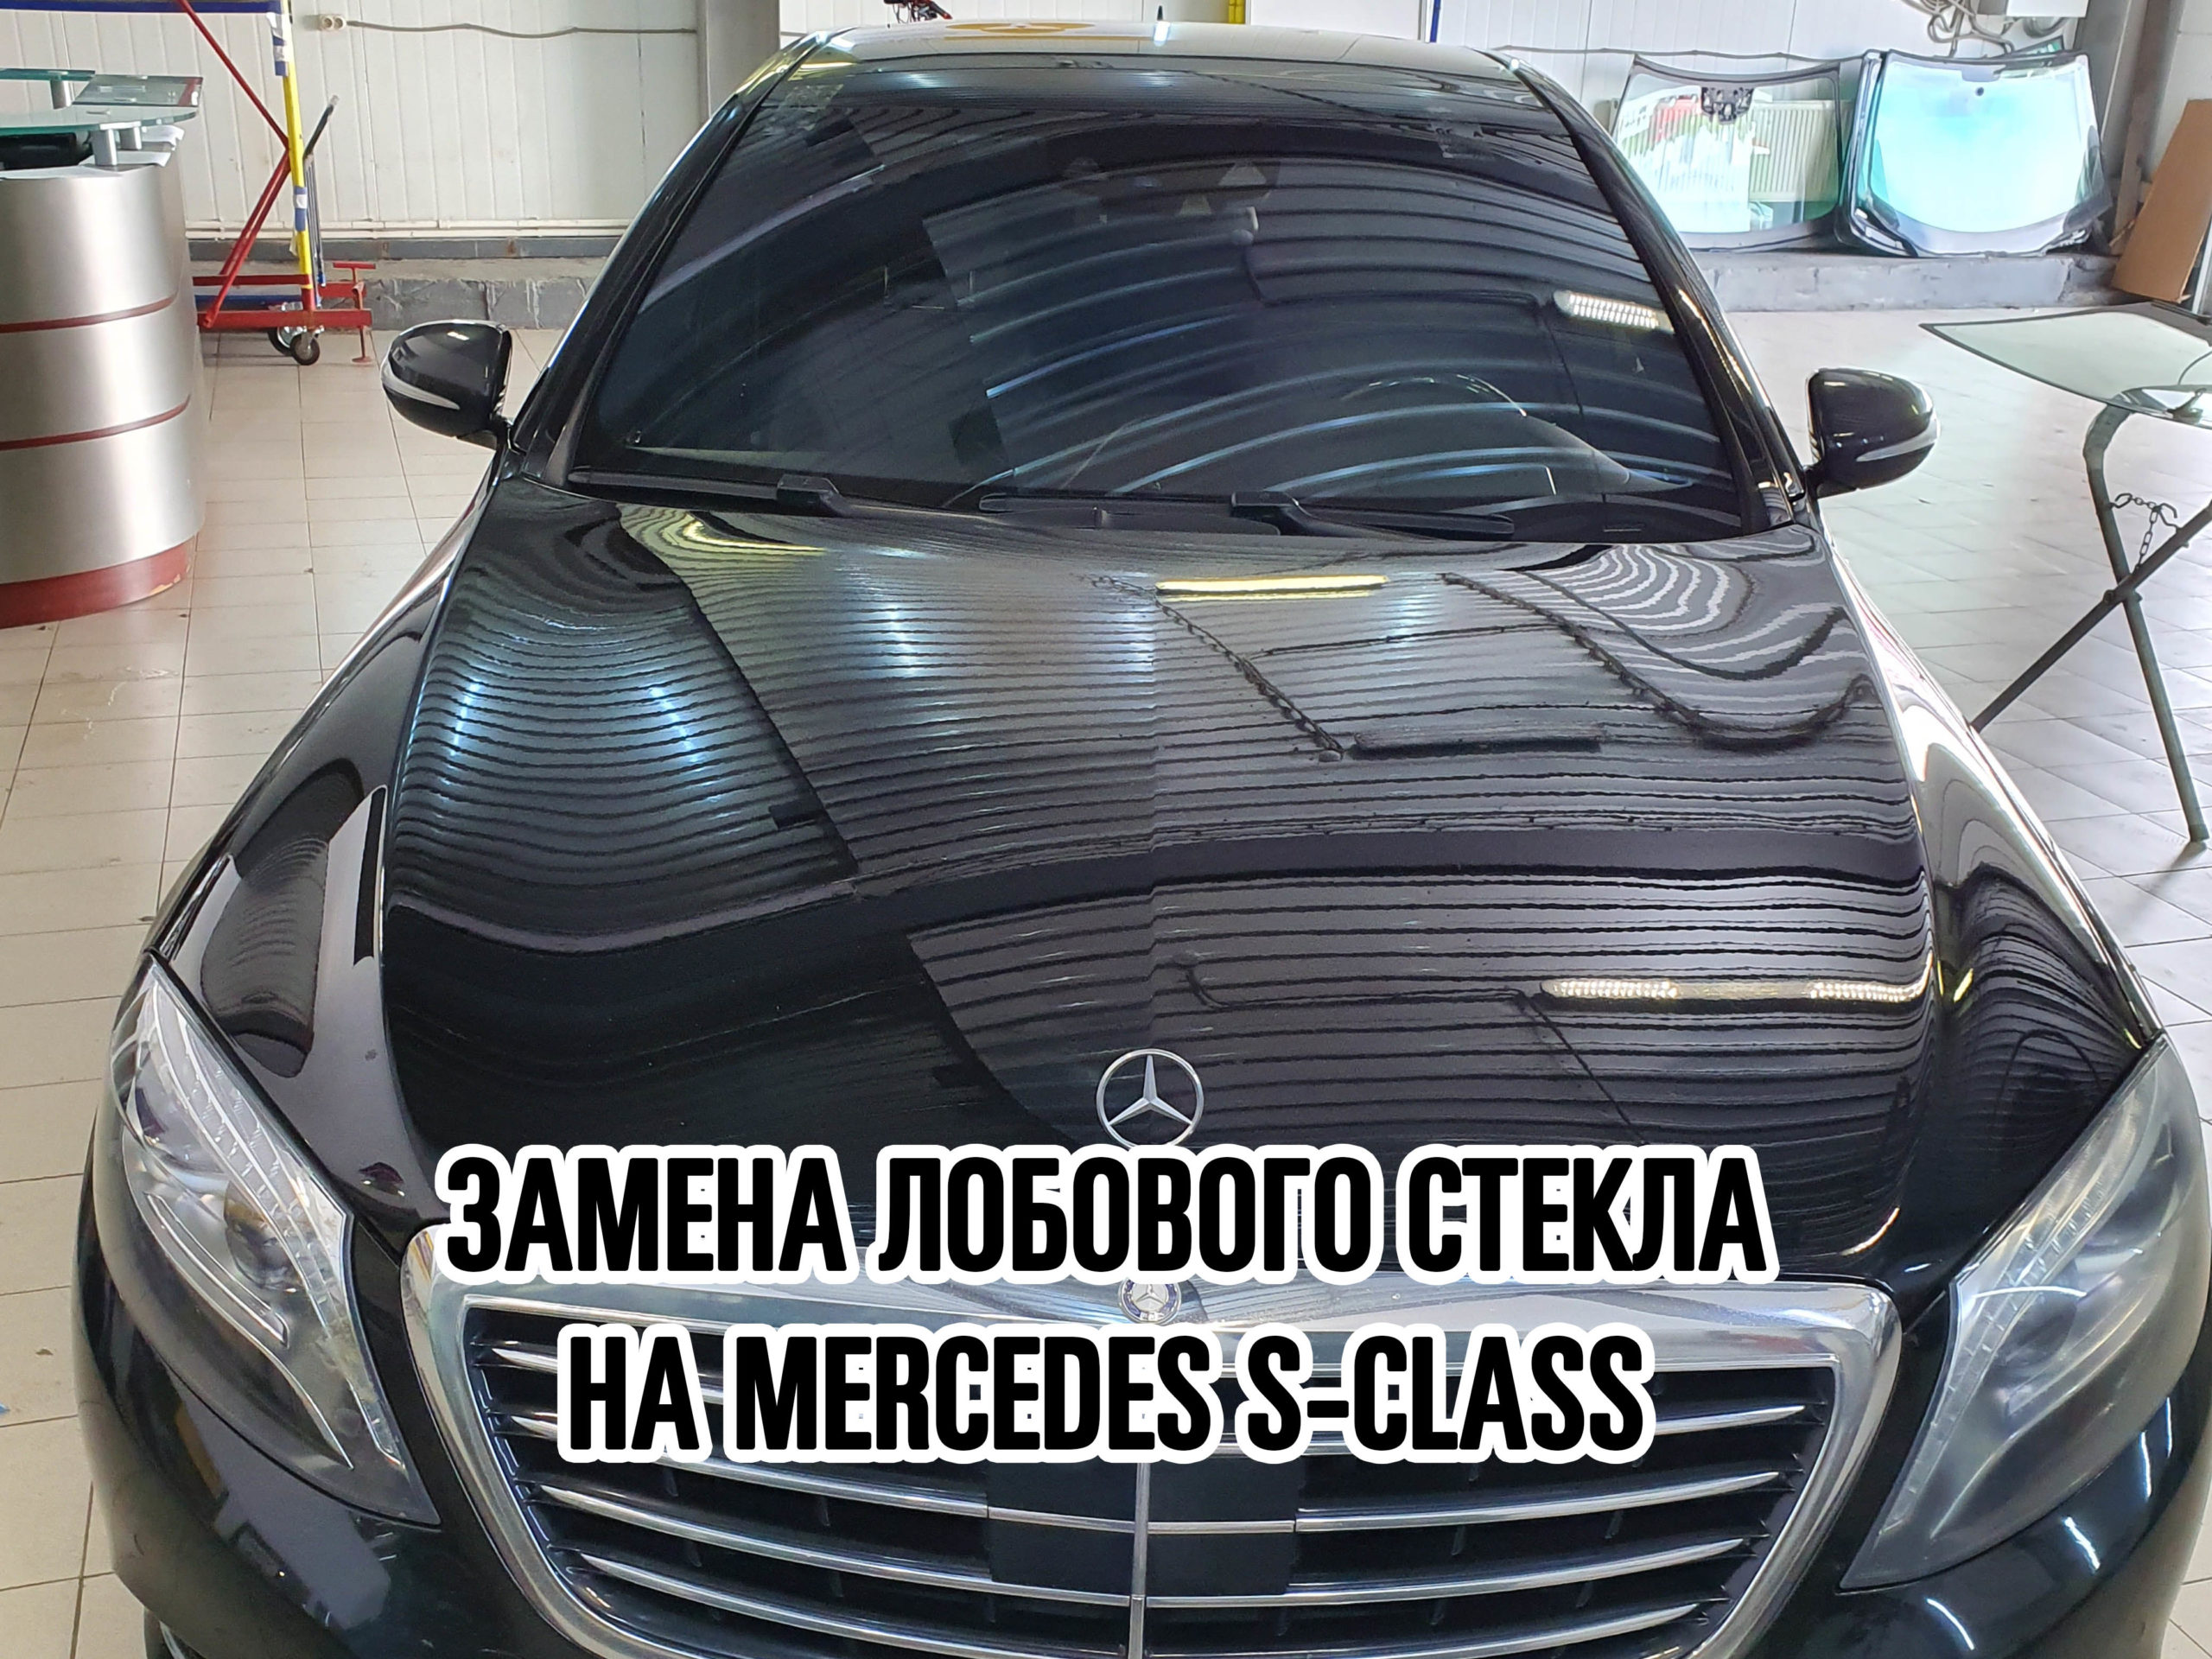 Лобовое стекло на Mercedes S-Class купить и установить в Москве